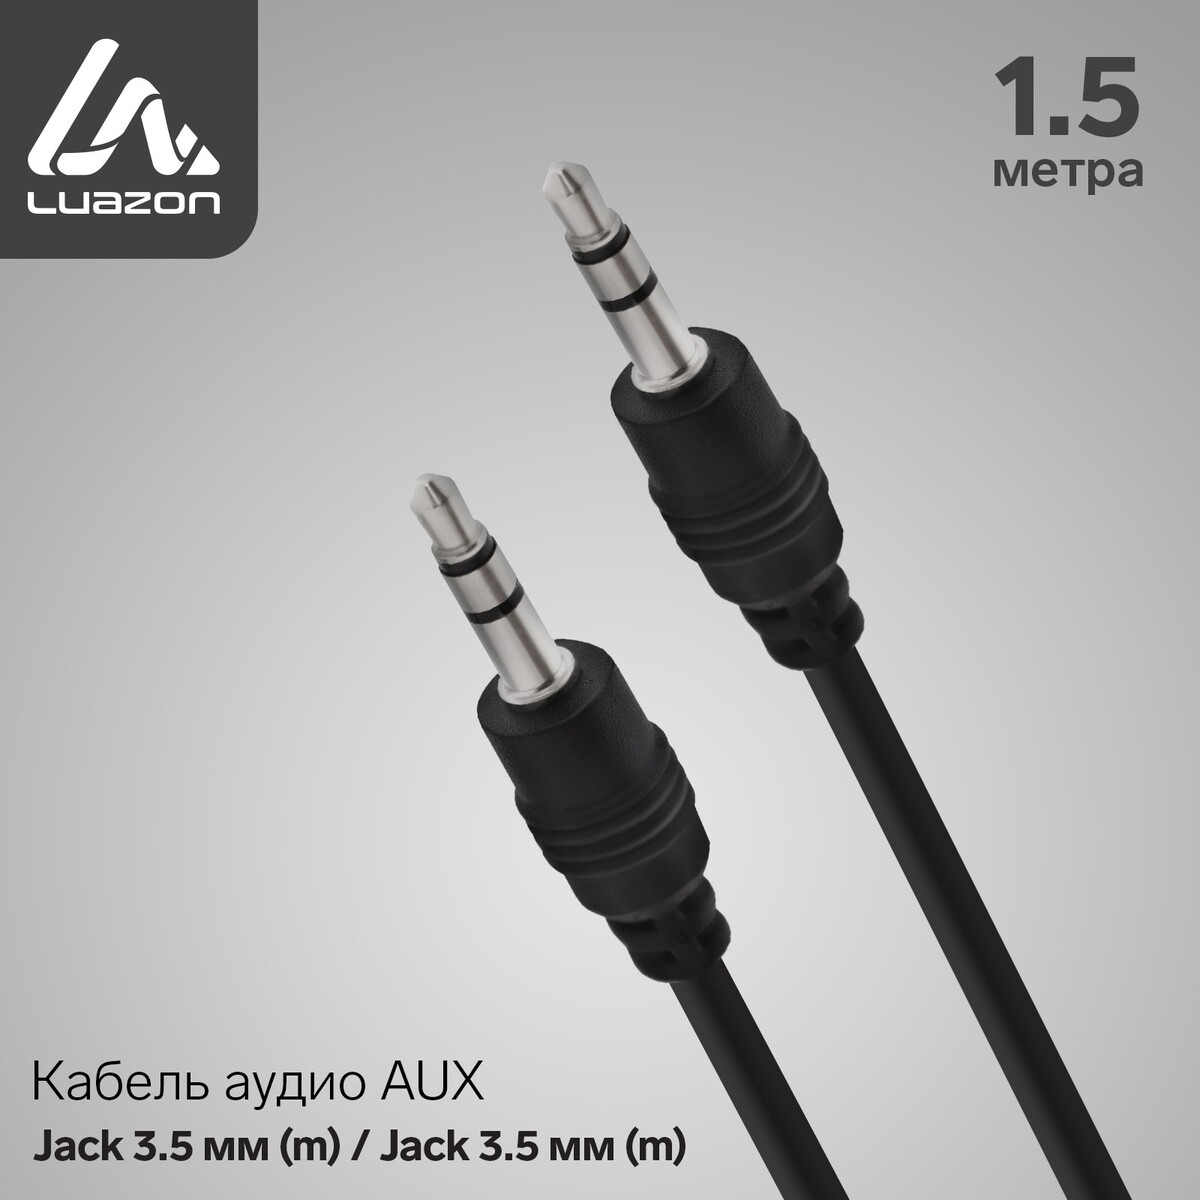 Кабель аудио aux luazon, jack 3.5 мм (m)-jack 3.5 мм (m), 1.5 м, черный кабель 5bites 3 5 jack m ac35j 007m 0 7m